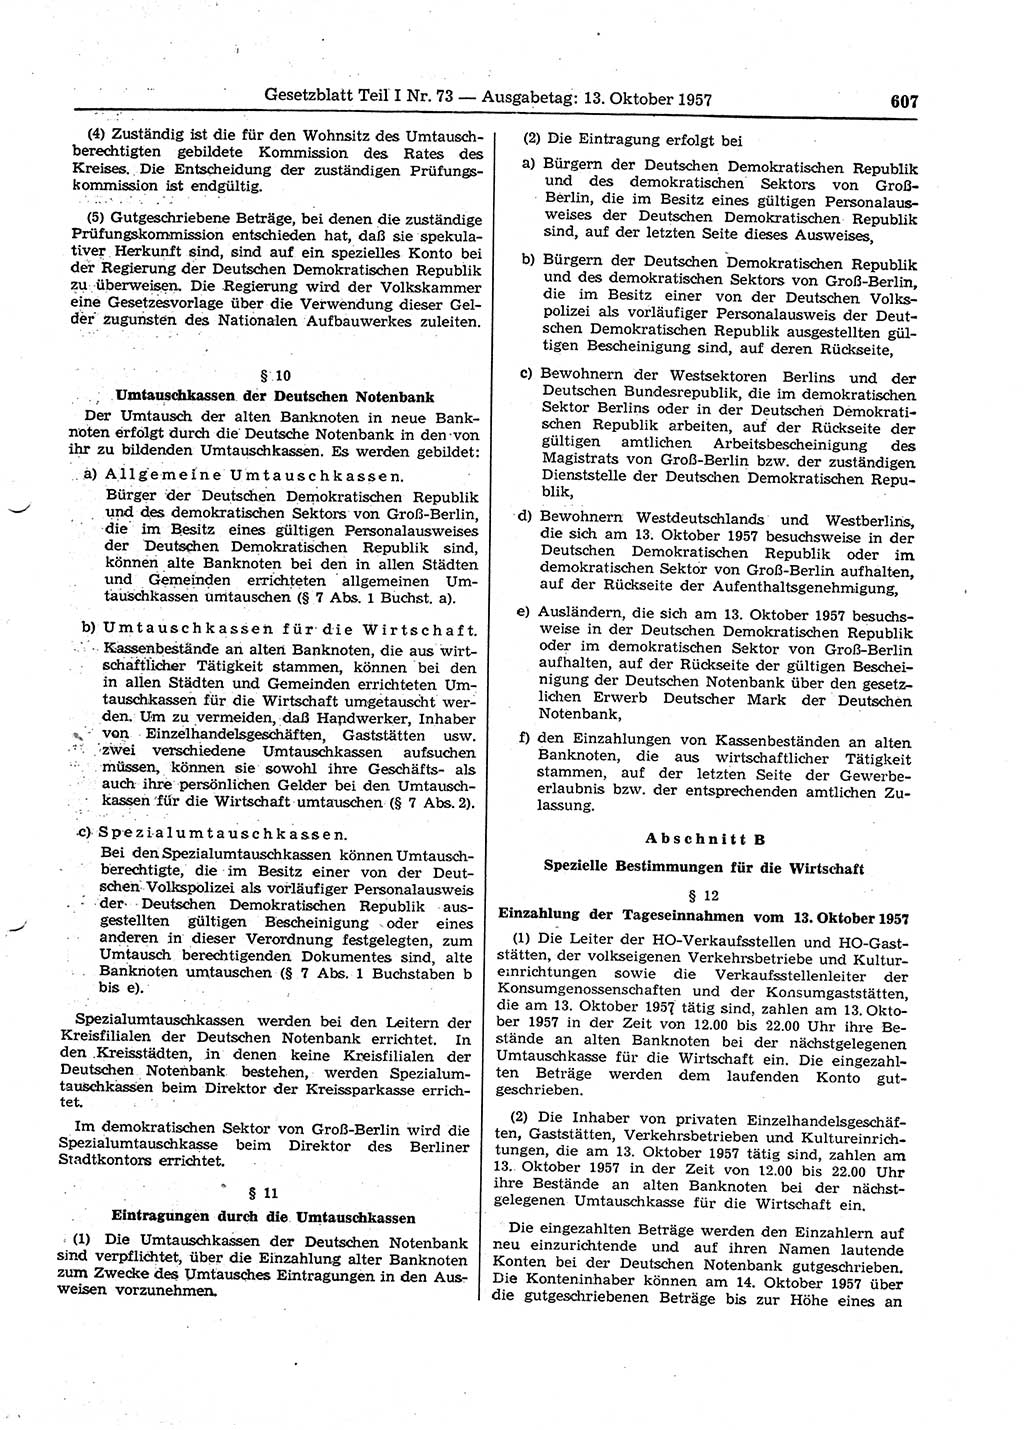 Gesetzblatt (GBl.) der Deutschen Demokratischen Republik (DDR) Teil Ⅰ 1957, Seite 607 (GBl. DDR Ⅰ 1957, S. 607)